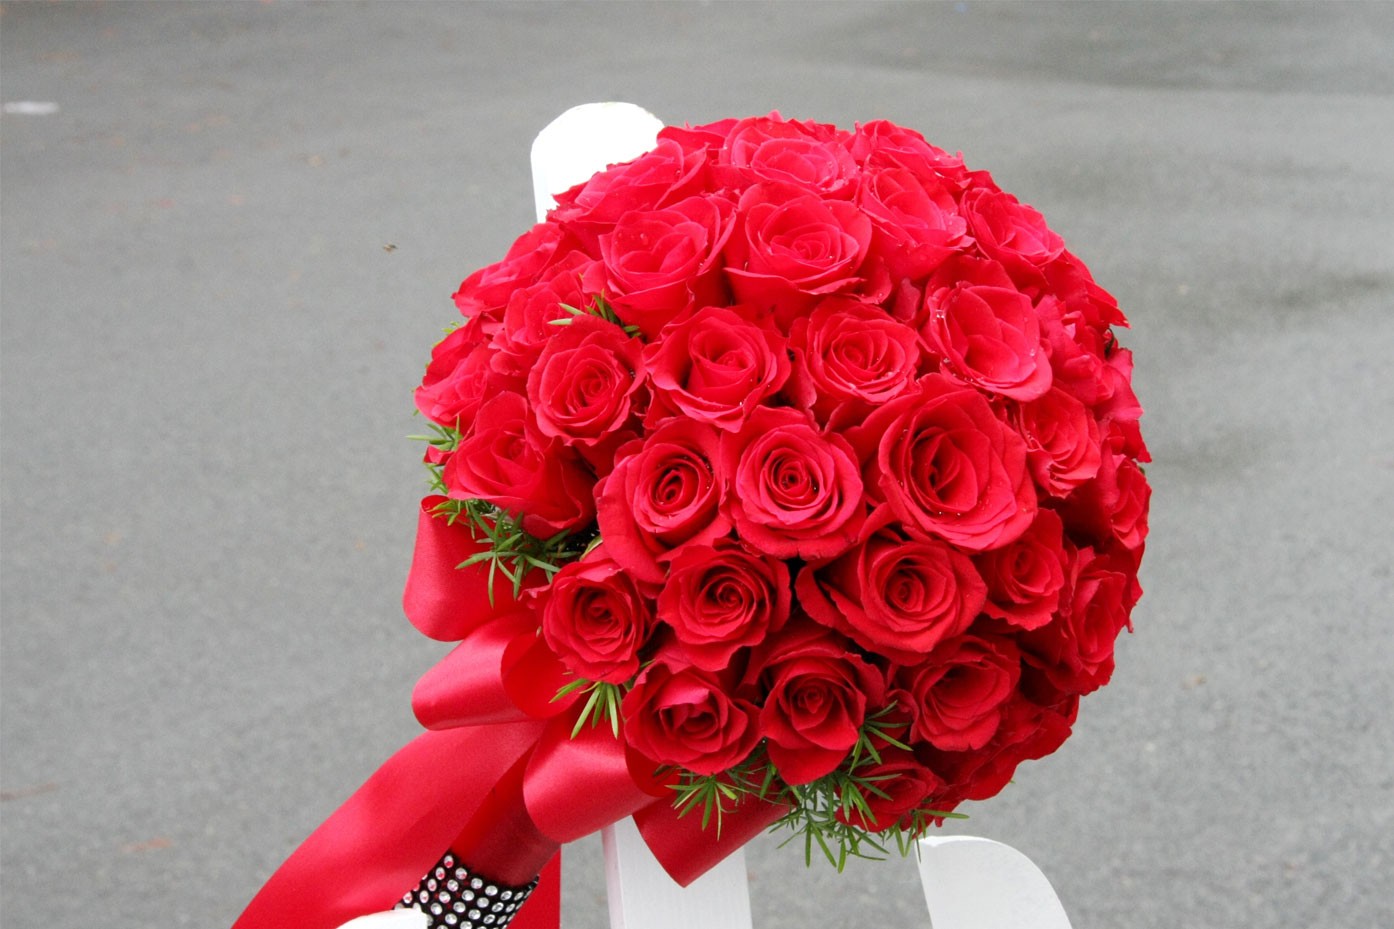 Hoa cô dâu đẹp bằng hoa hồng đỏ - lãng mạn